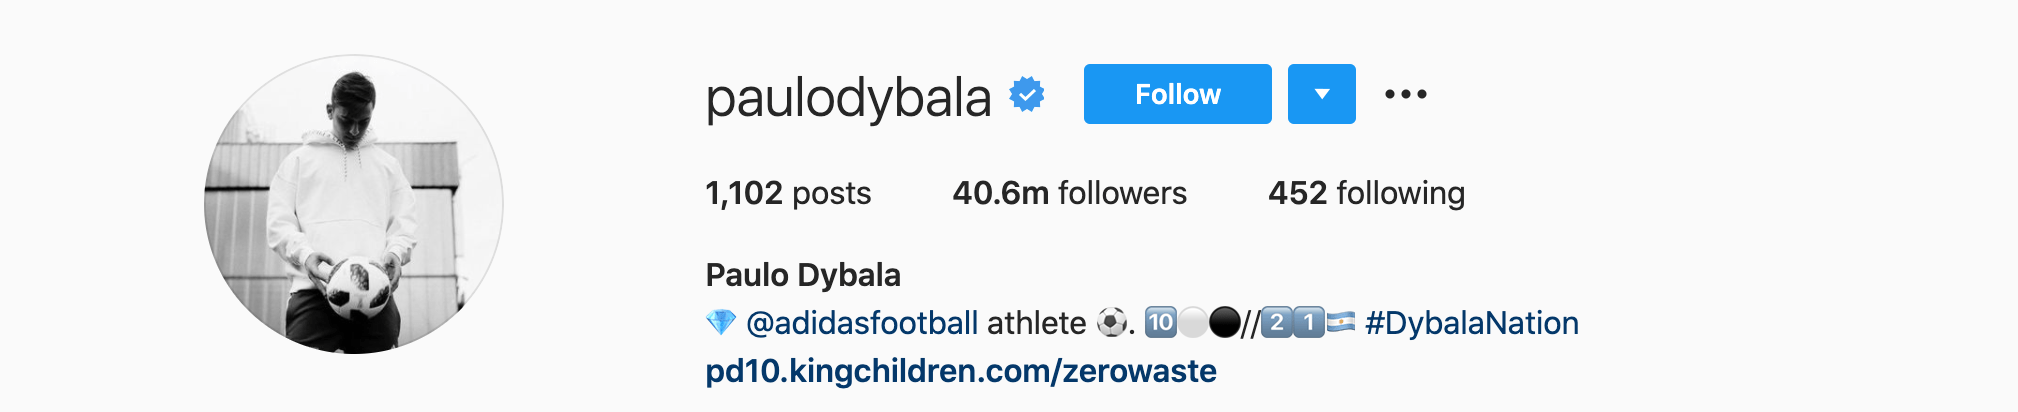 Top Instagram Influencers - PAULO DYBALA